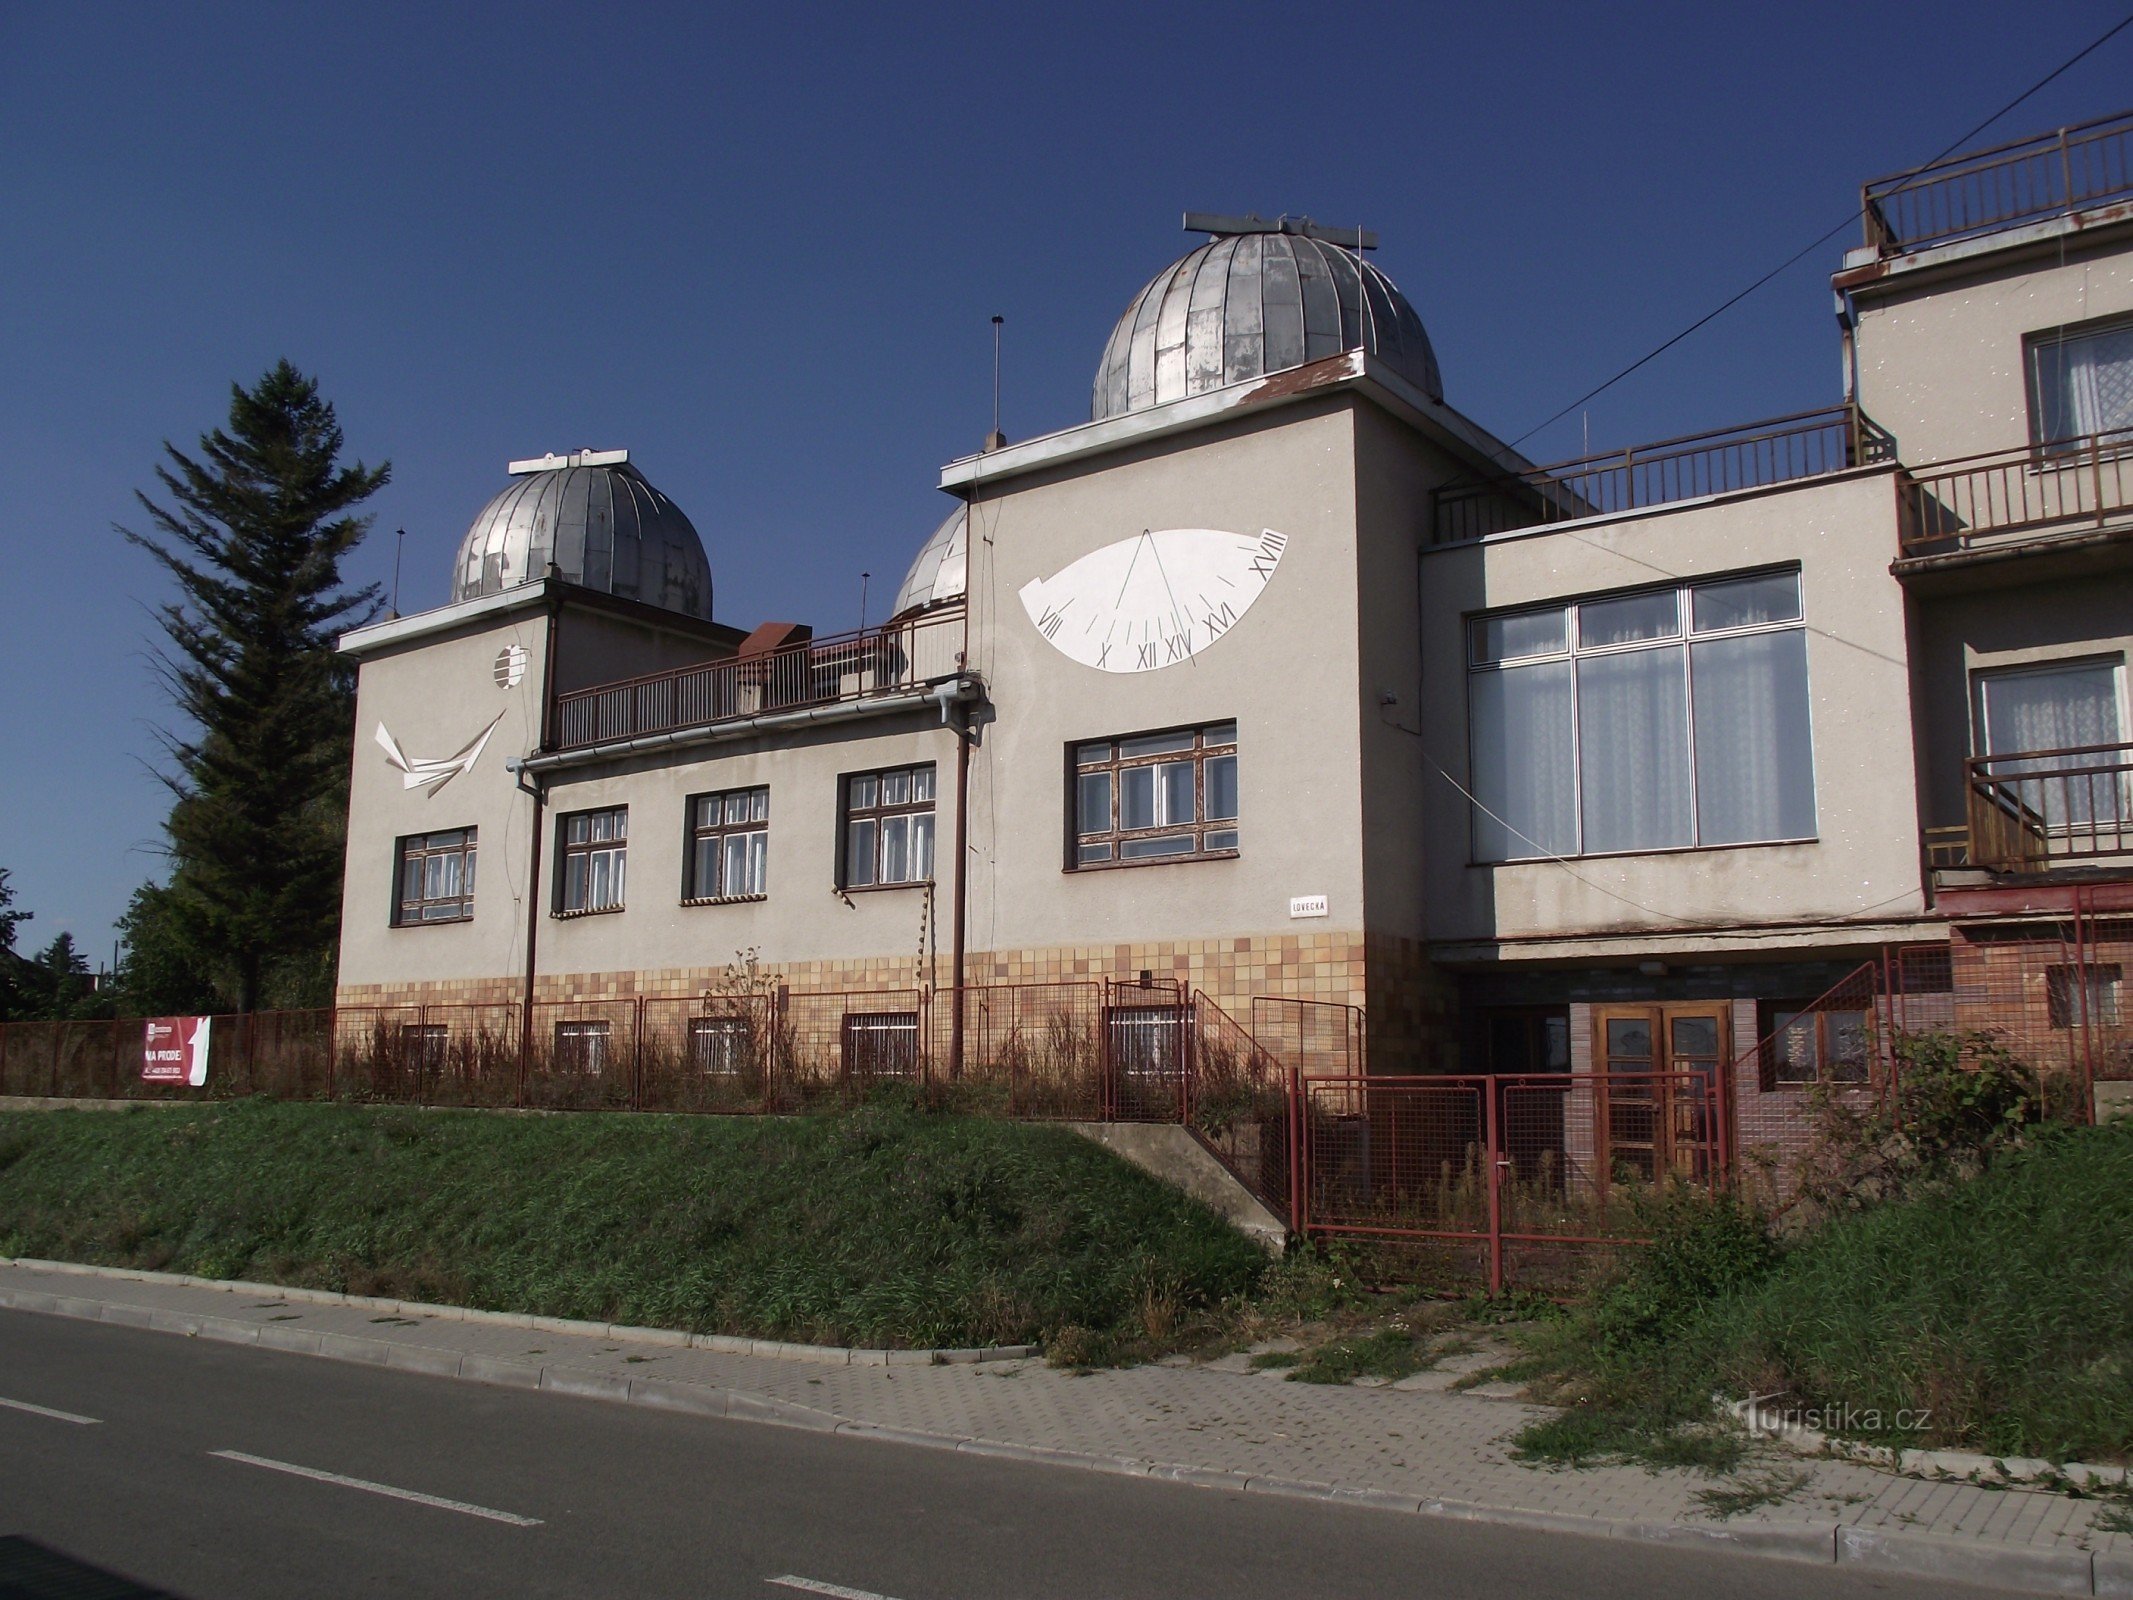 Ždánice - observatório